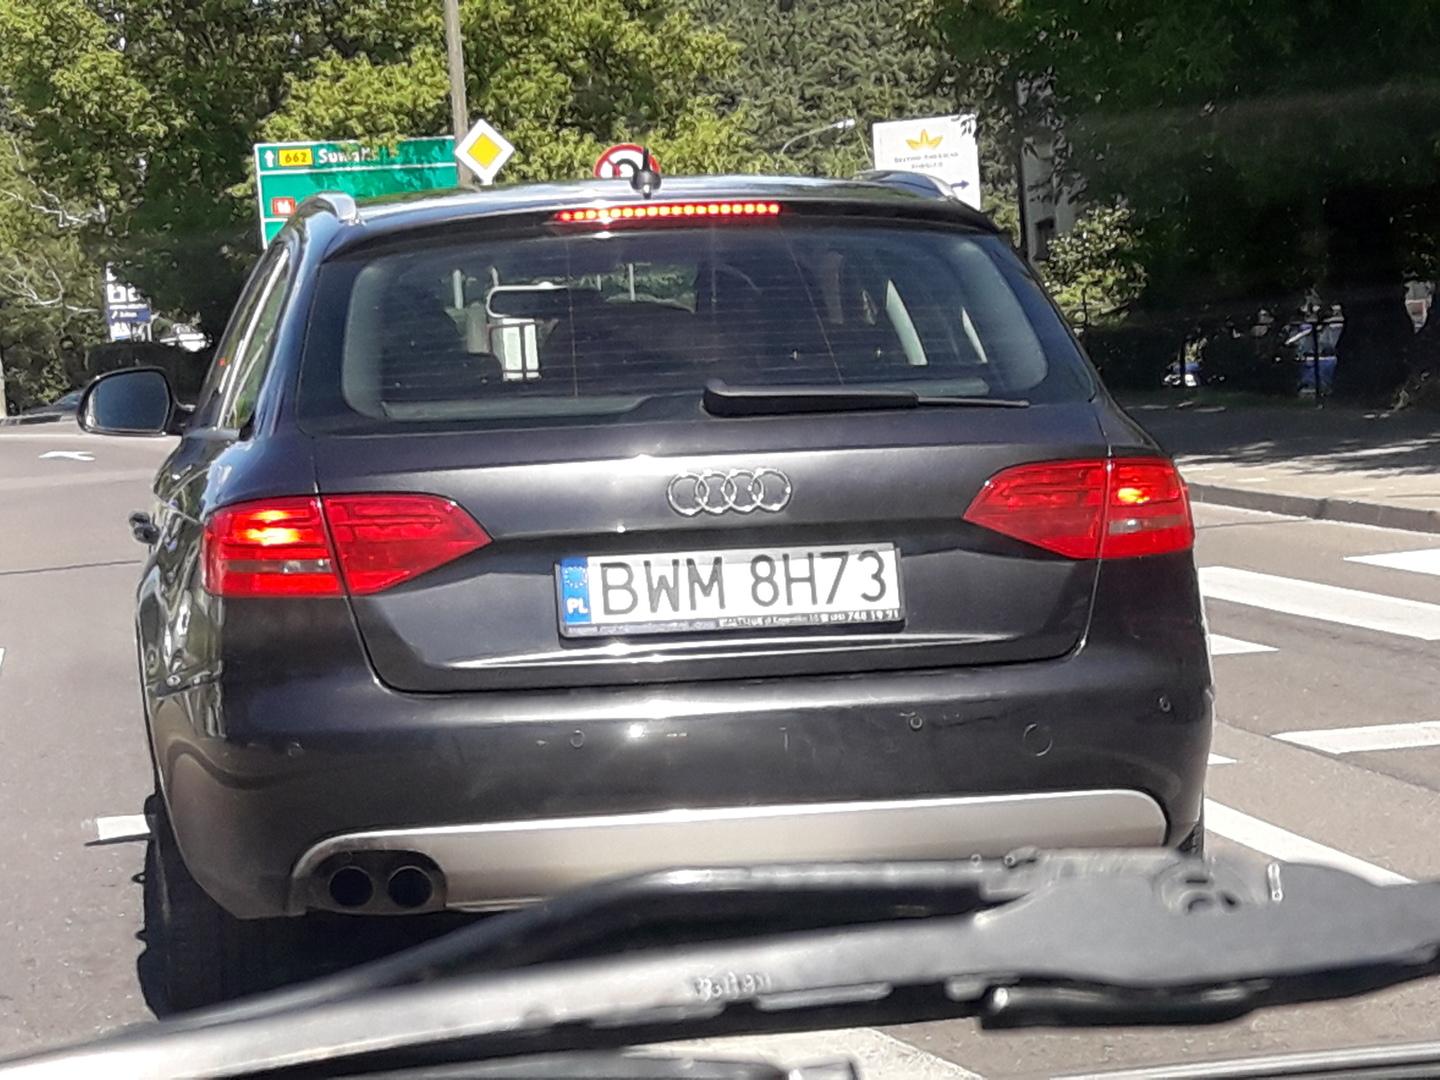 BWM 8H73 - Oceń kierowcę! - tablica-rejestracyjna.pl